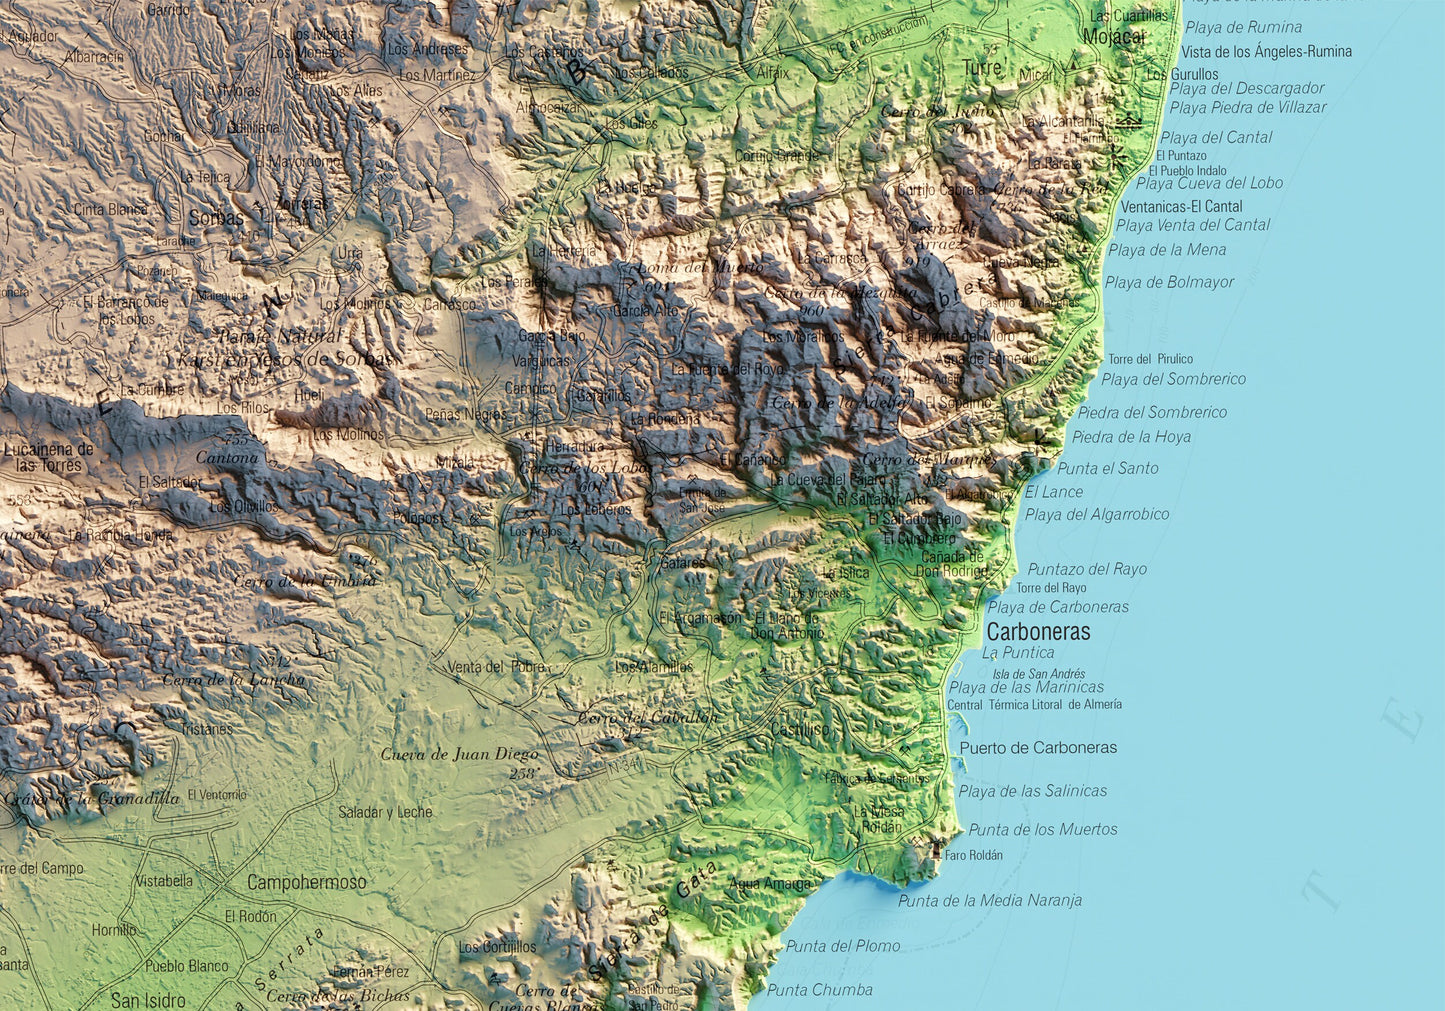 CABO DE GATA. Mapa topográfico.